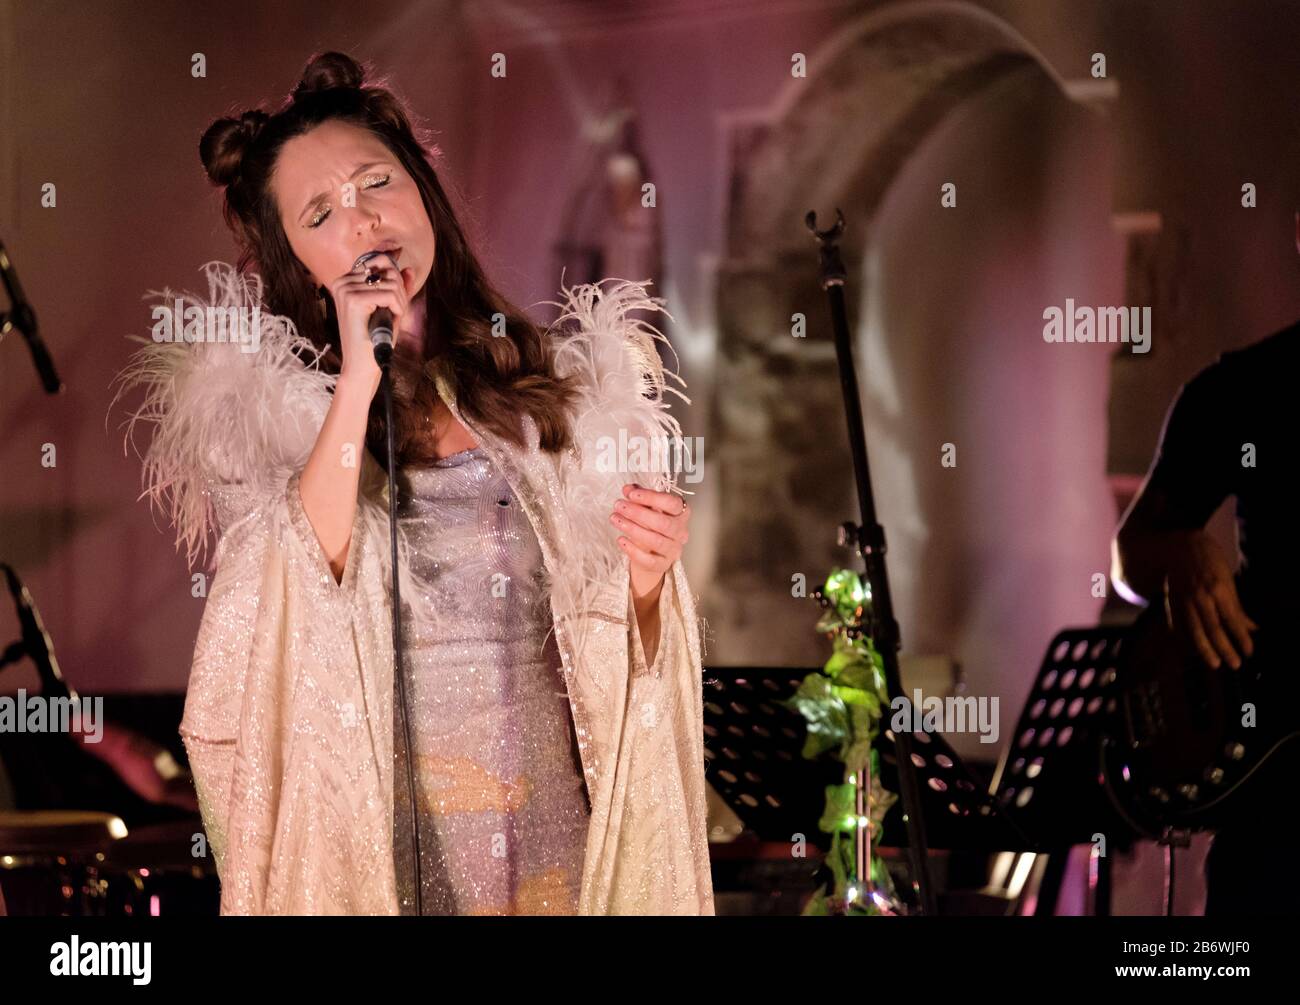 La performance di debutto di Aruba Red (nota anche come Natasha Bruce) alla St Pancras Old Church di Londra, mercoledì 11th marzo 2020 Foto Stock